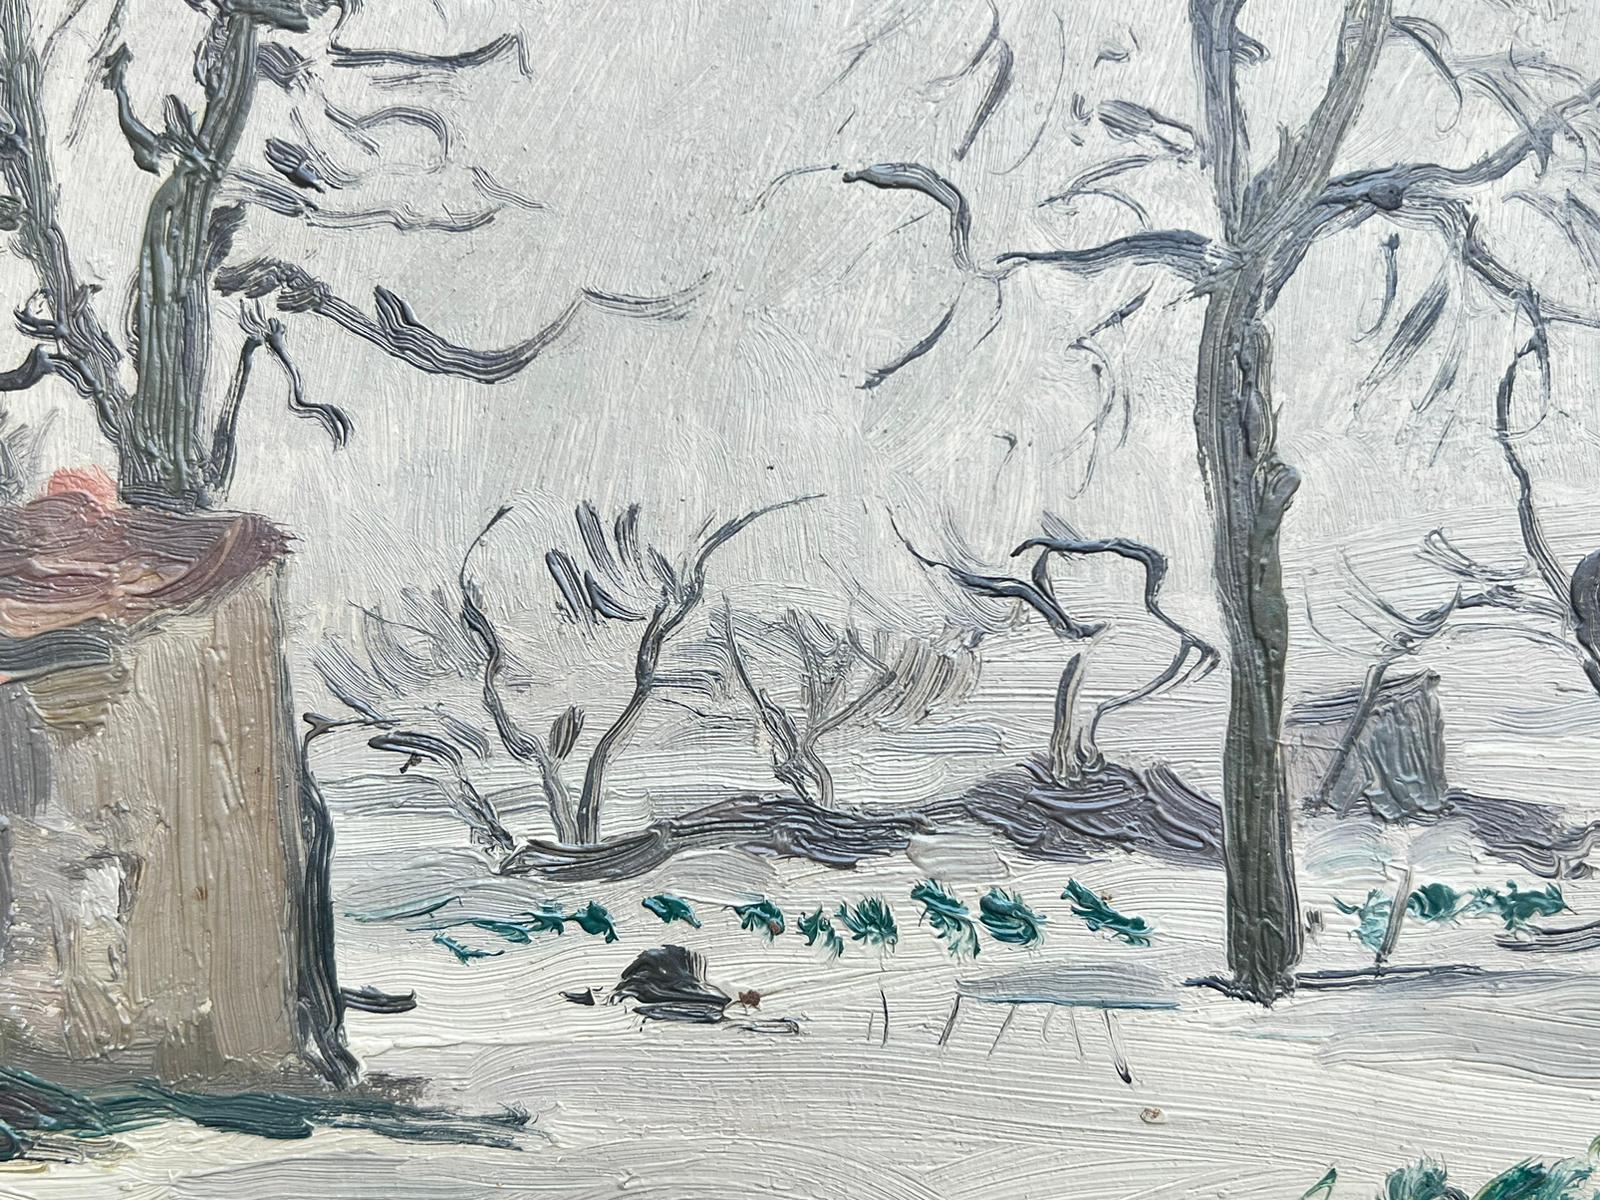 Winter
von MIGUEL TUSQUELLAS CORBELLA (Spanisch, 1884-1969)
signiert - und gemalt auf Künstler Studio gestempeltem Karton
Ölgemälde auf Karton, ungerahmt
Pappe: 5,5 x 8,5 Zoll
Provenienz: Privatsammlung, Frankreich
Zustand: guter und gesunder